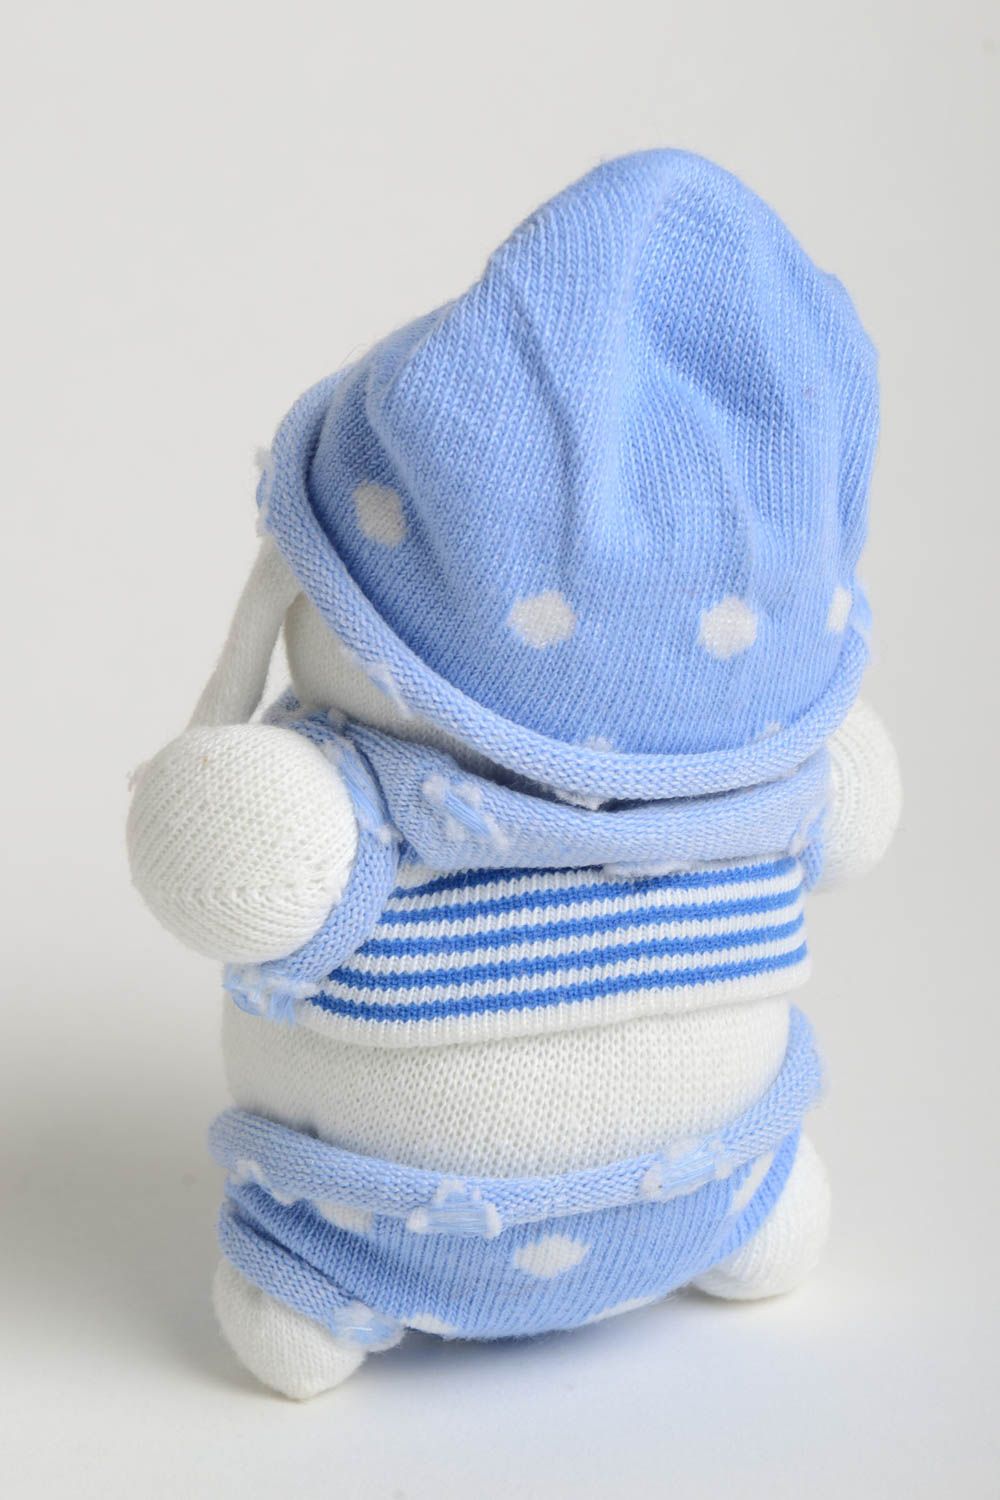 Игрушка заяц ручной работы авторская игрушка стильный подарок ребенку в голубом  фото 4